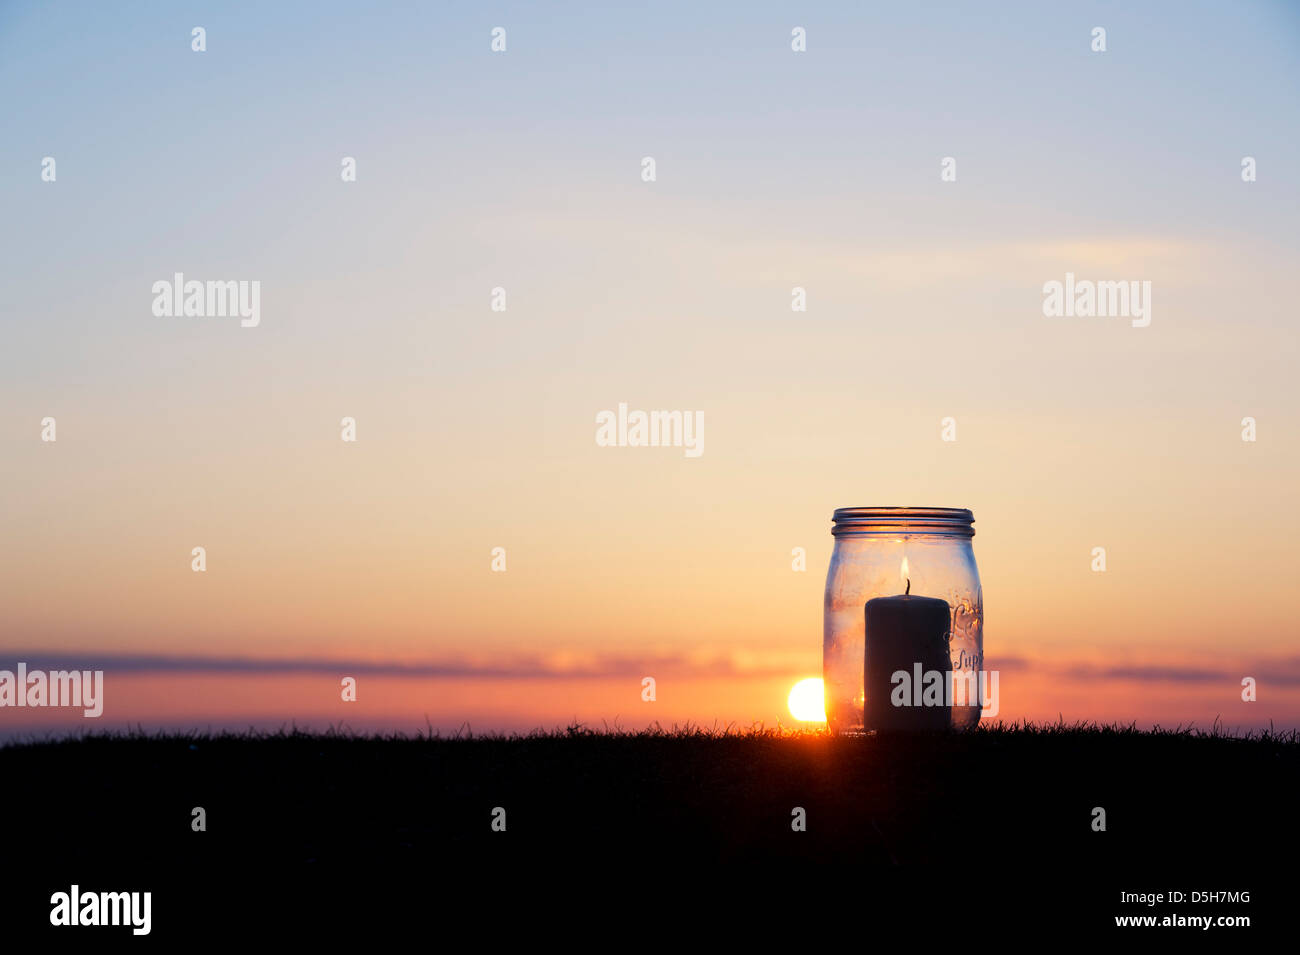 Candela in un barattolo di vetro a sunrise. Silhouette Foto Stock